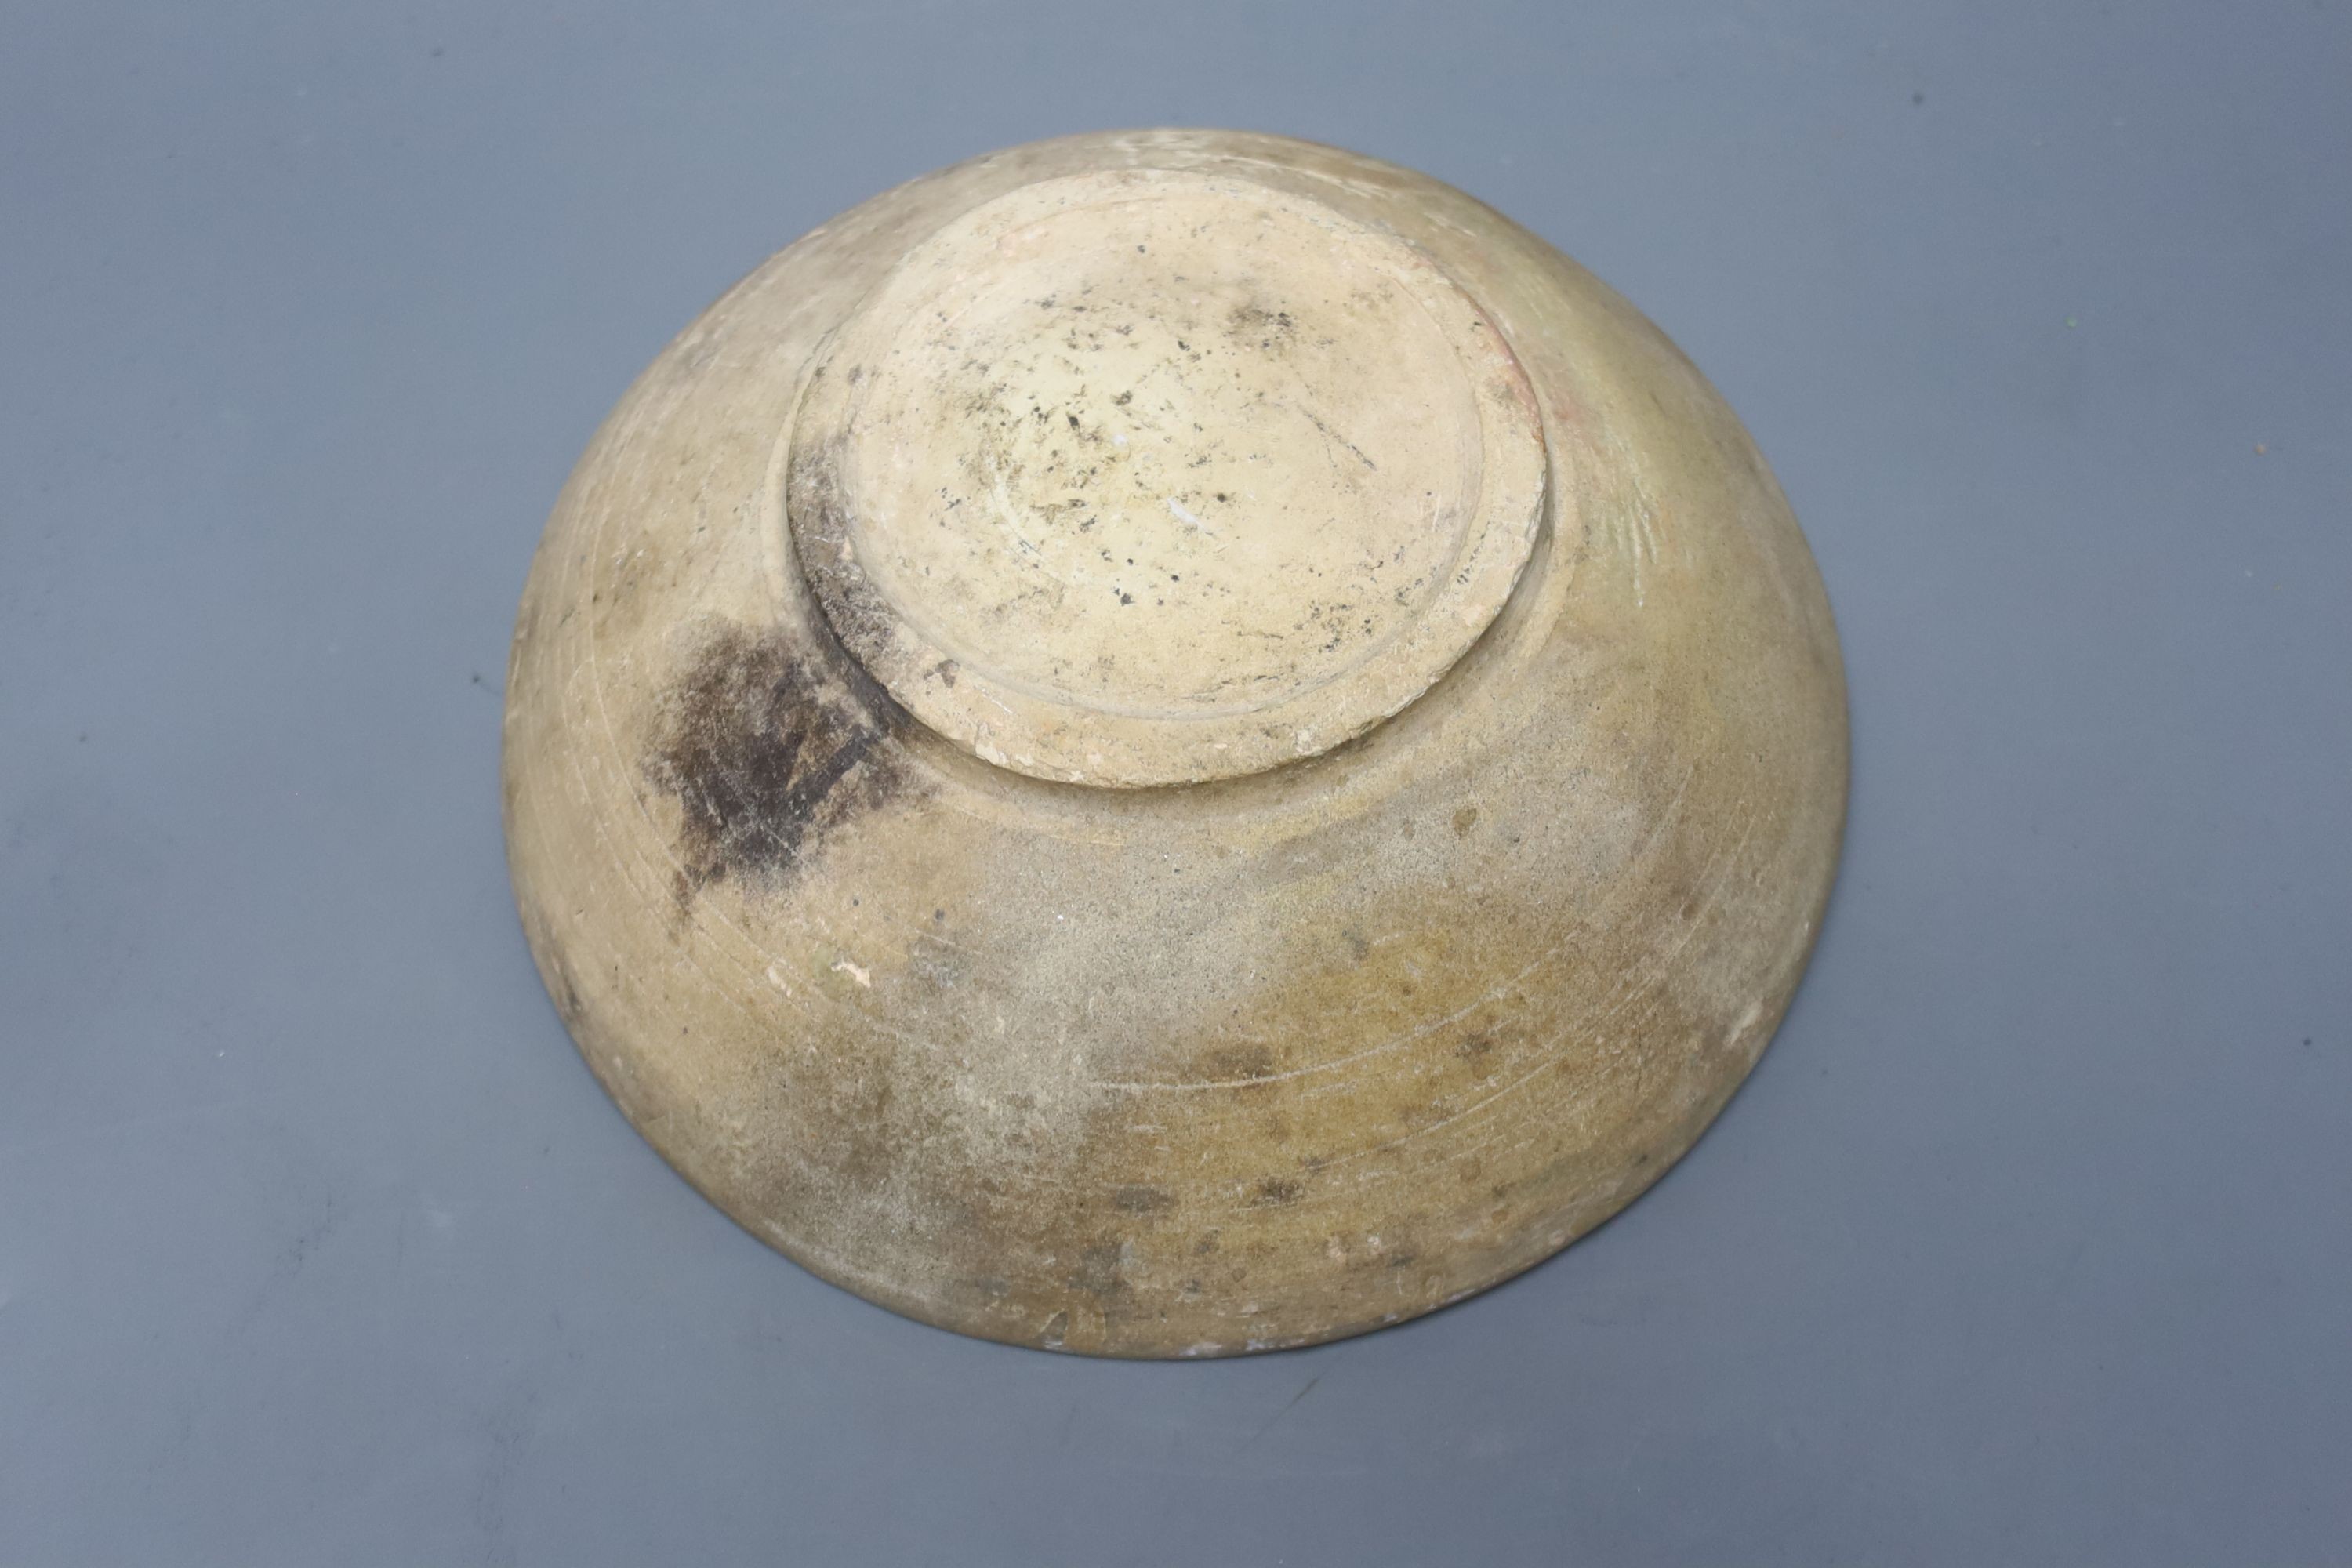 A Persian medieval bowl, diameter 24cm